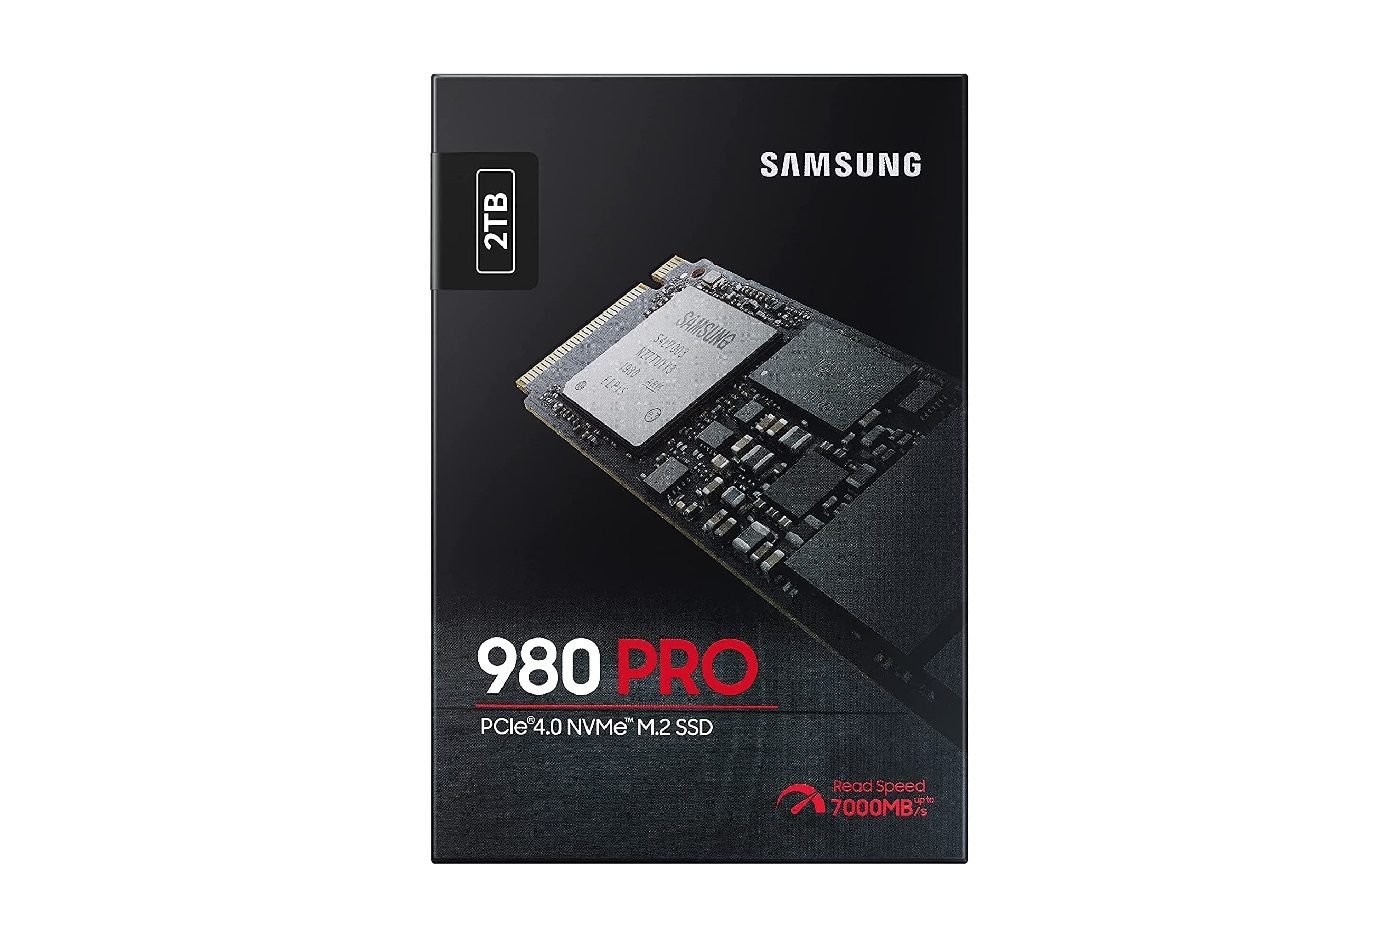 Le SSD Samsung 980 Pro 1 To, idéal pour la PS5, est bradé lors du